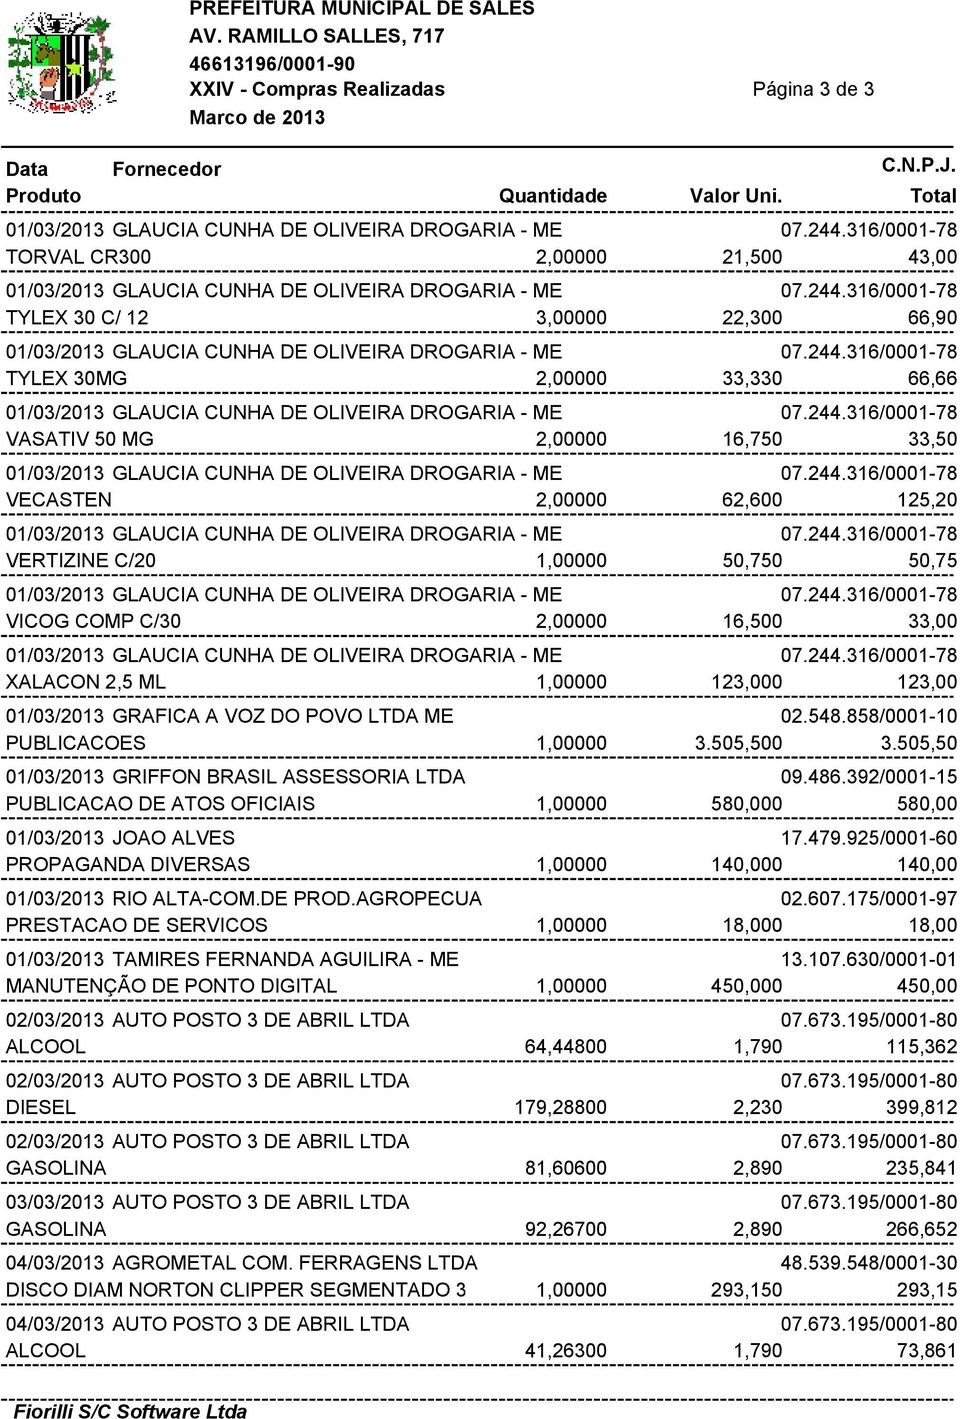 505,50 01/03/2013 GRIFFON BRASIL ASSESSORIA LTDA 09.486.392/0001-15 PUBLICACAO DE ATOS OFICIAIS 1,00000 580,000 580,00 01/03/2013 JOAO ALVES 17.479.